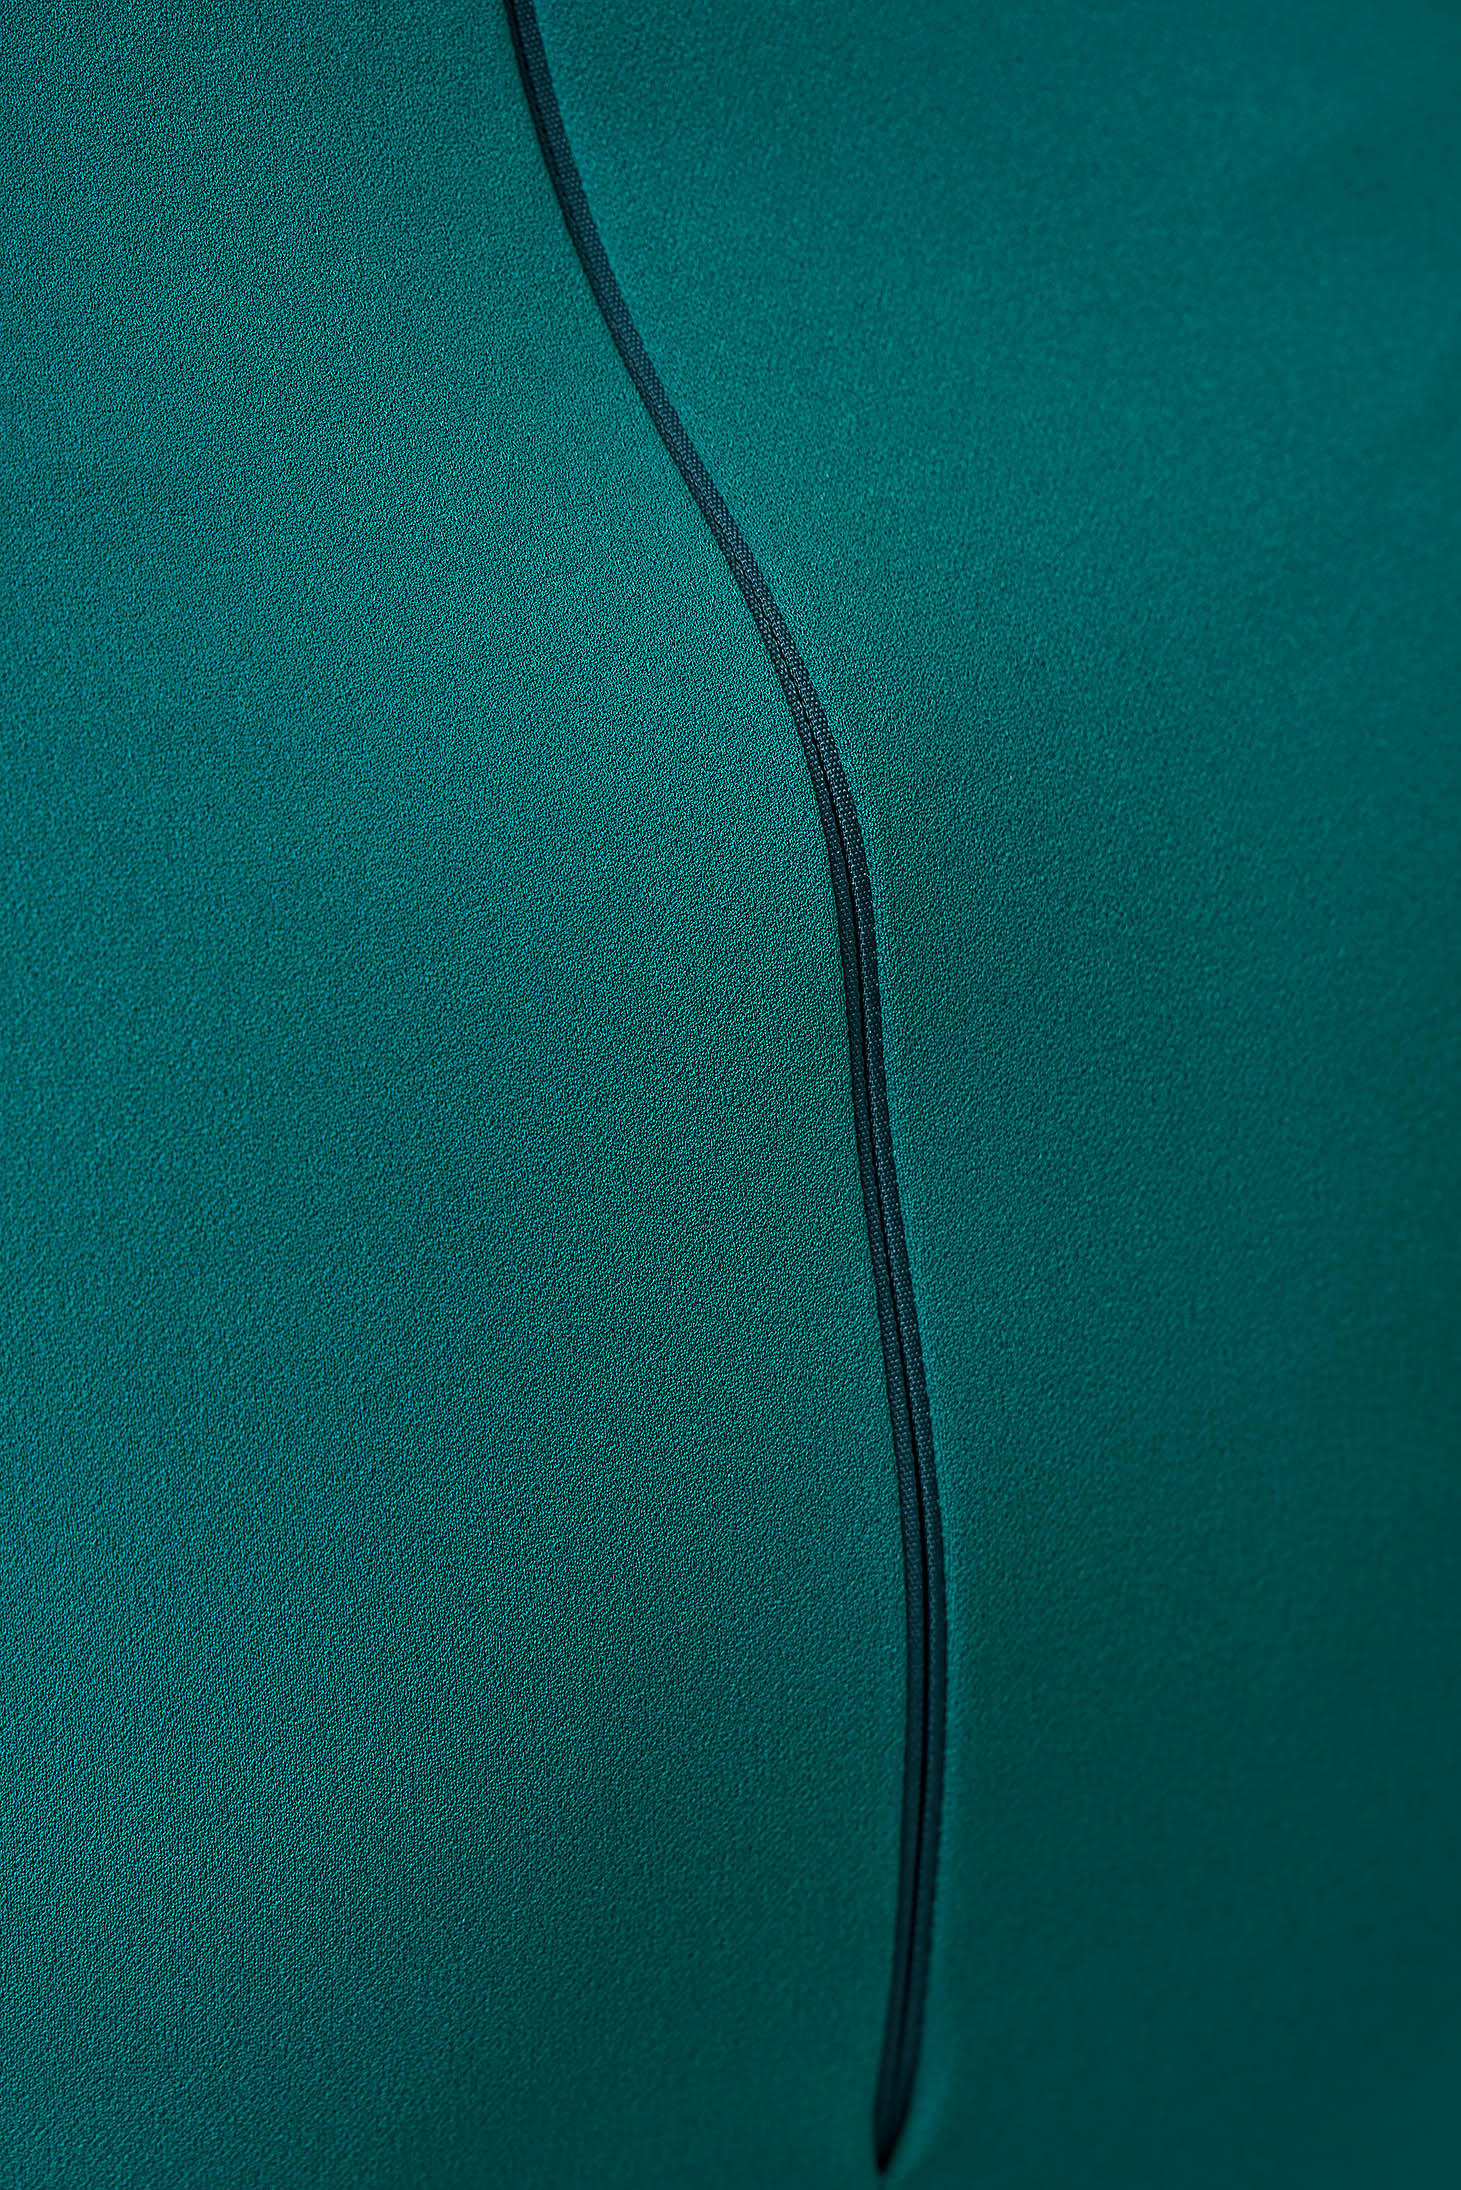 Petrol zöld midi krepp ceruza hátul felsliccelt ruha kivágott hátrésszel - StarShinerS 6 - StarShinerS.hu